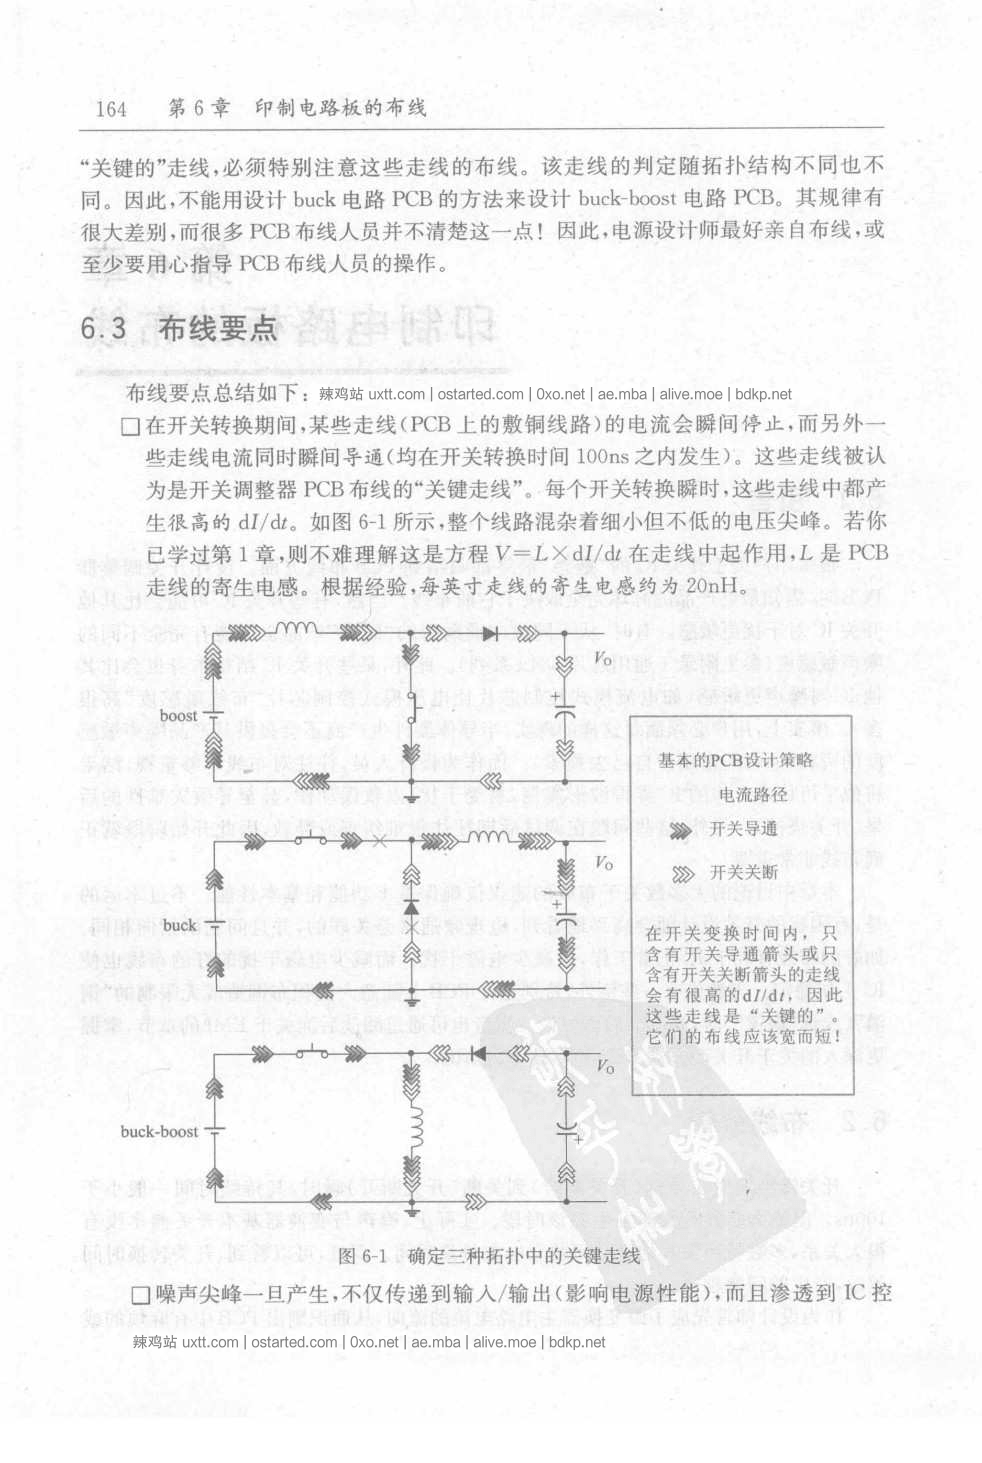 精通开关电源设计 中文2008版 高清扫描PDF 带书签 - 第2张图片